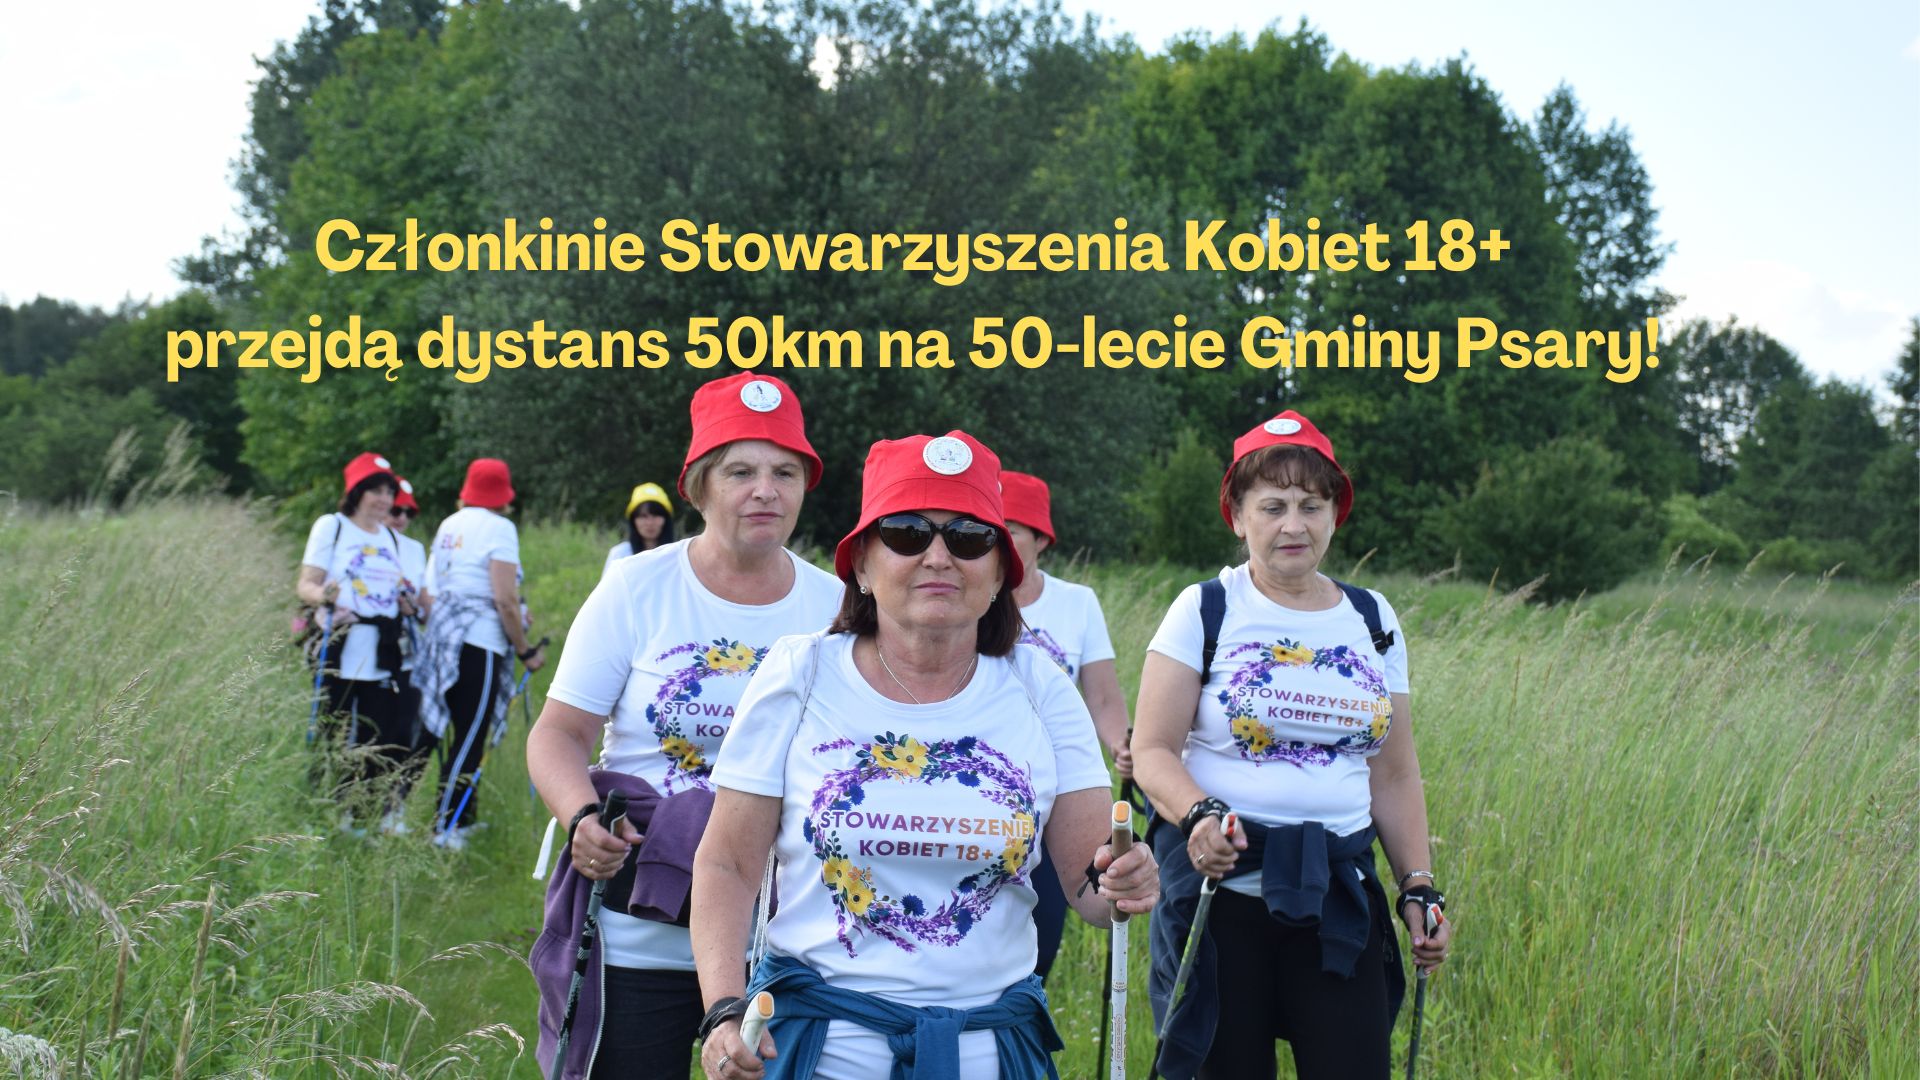 Na zdjęciu znajdują się członkinie ze Stowarzyszenia Kobiet 18+, które uprawiają nordic walking. Panie ubrane są w czerwone czapki i białe koszulki z kolorowym wzorem. Na środku znajduje się żółty napis: Członkinie Stowarzyszenia Kobiet 18+ przejdą dystans 50 km na 50-lecie Gminy Psary!